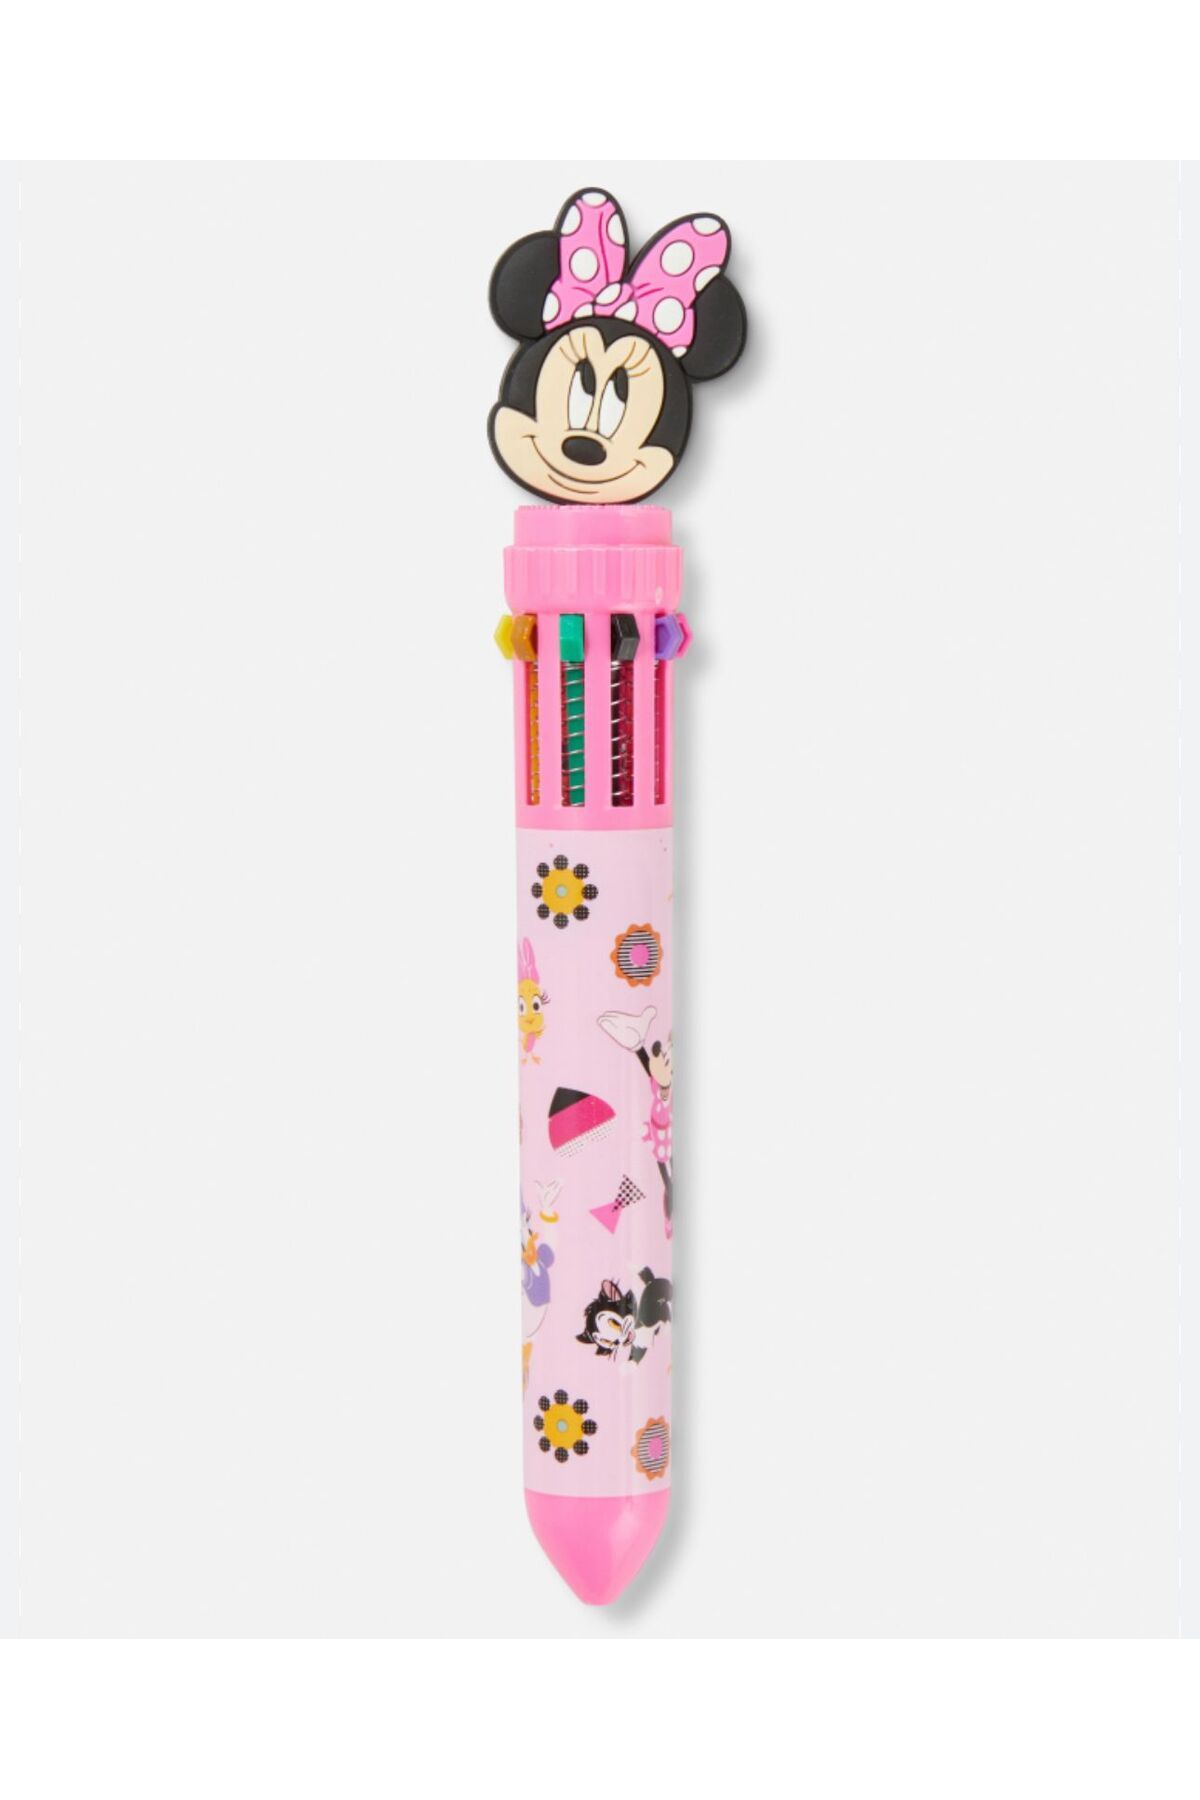 QUEEN AKSESUAR İthal lüks Disney 3d minnie mouse çok renkli tükenmez kalem 10 renk boya seti pembe